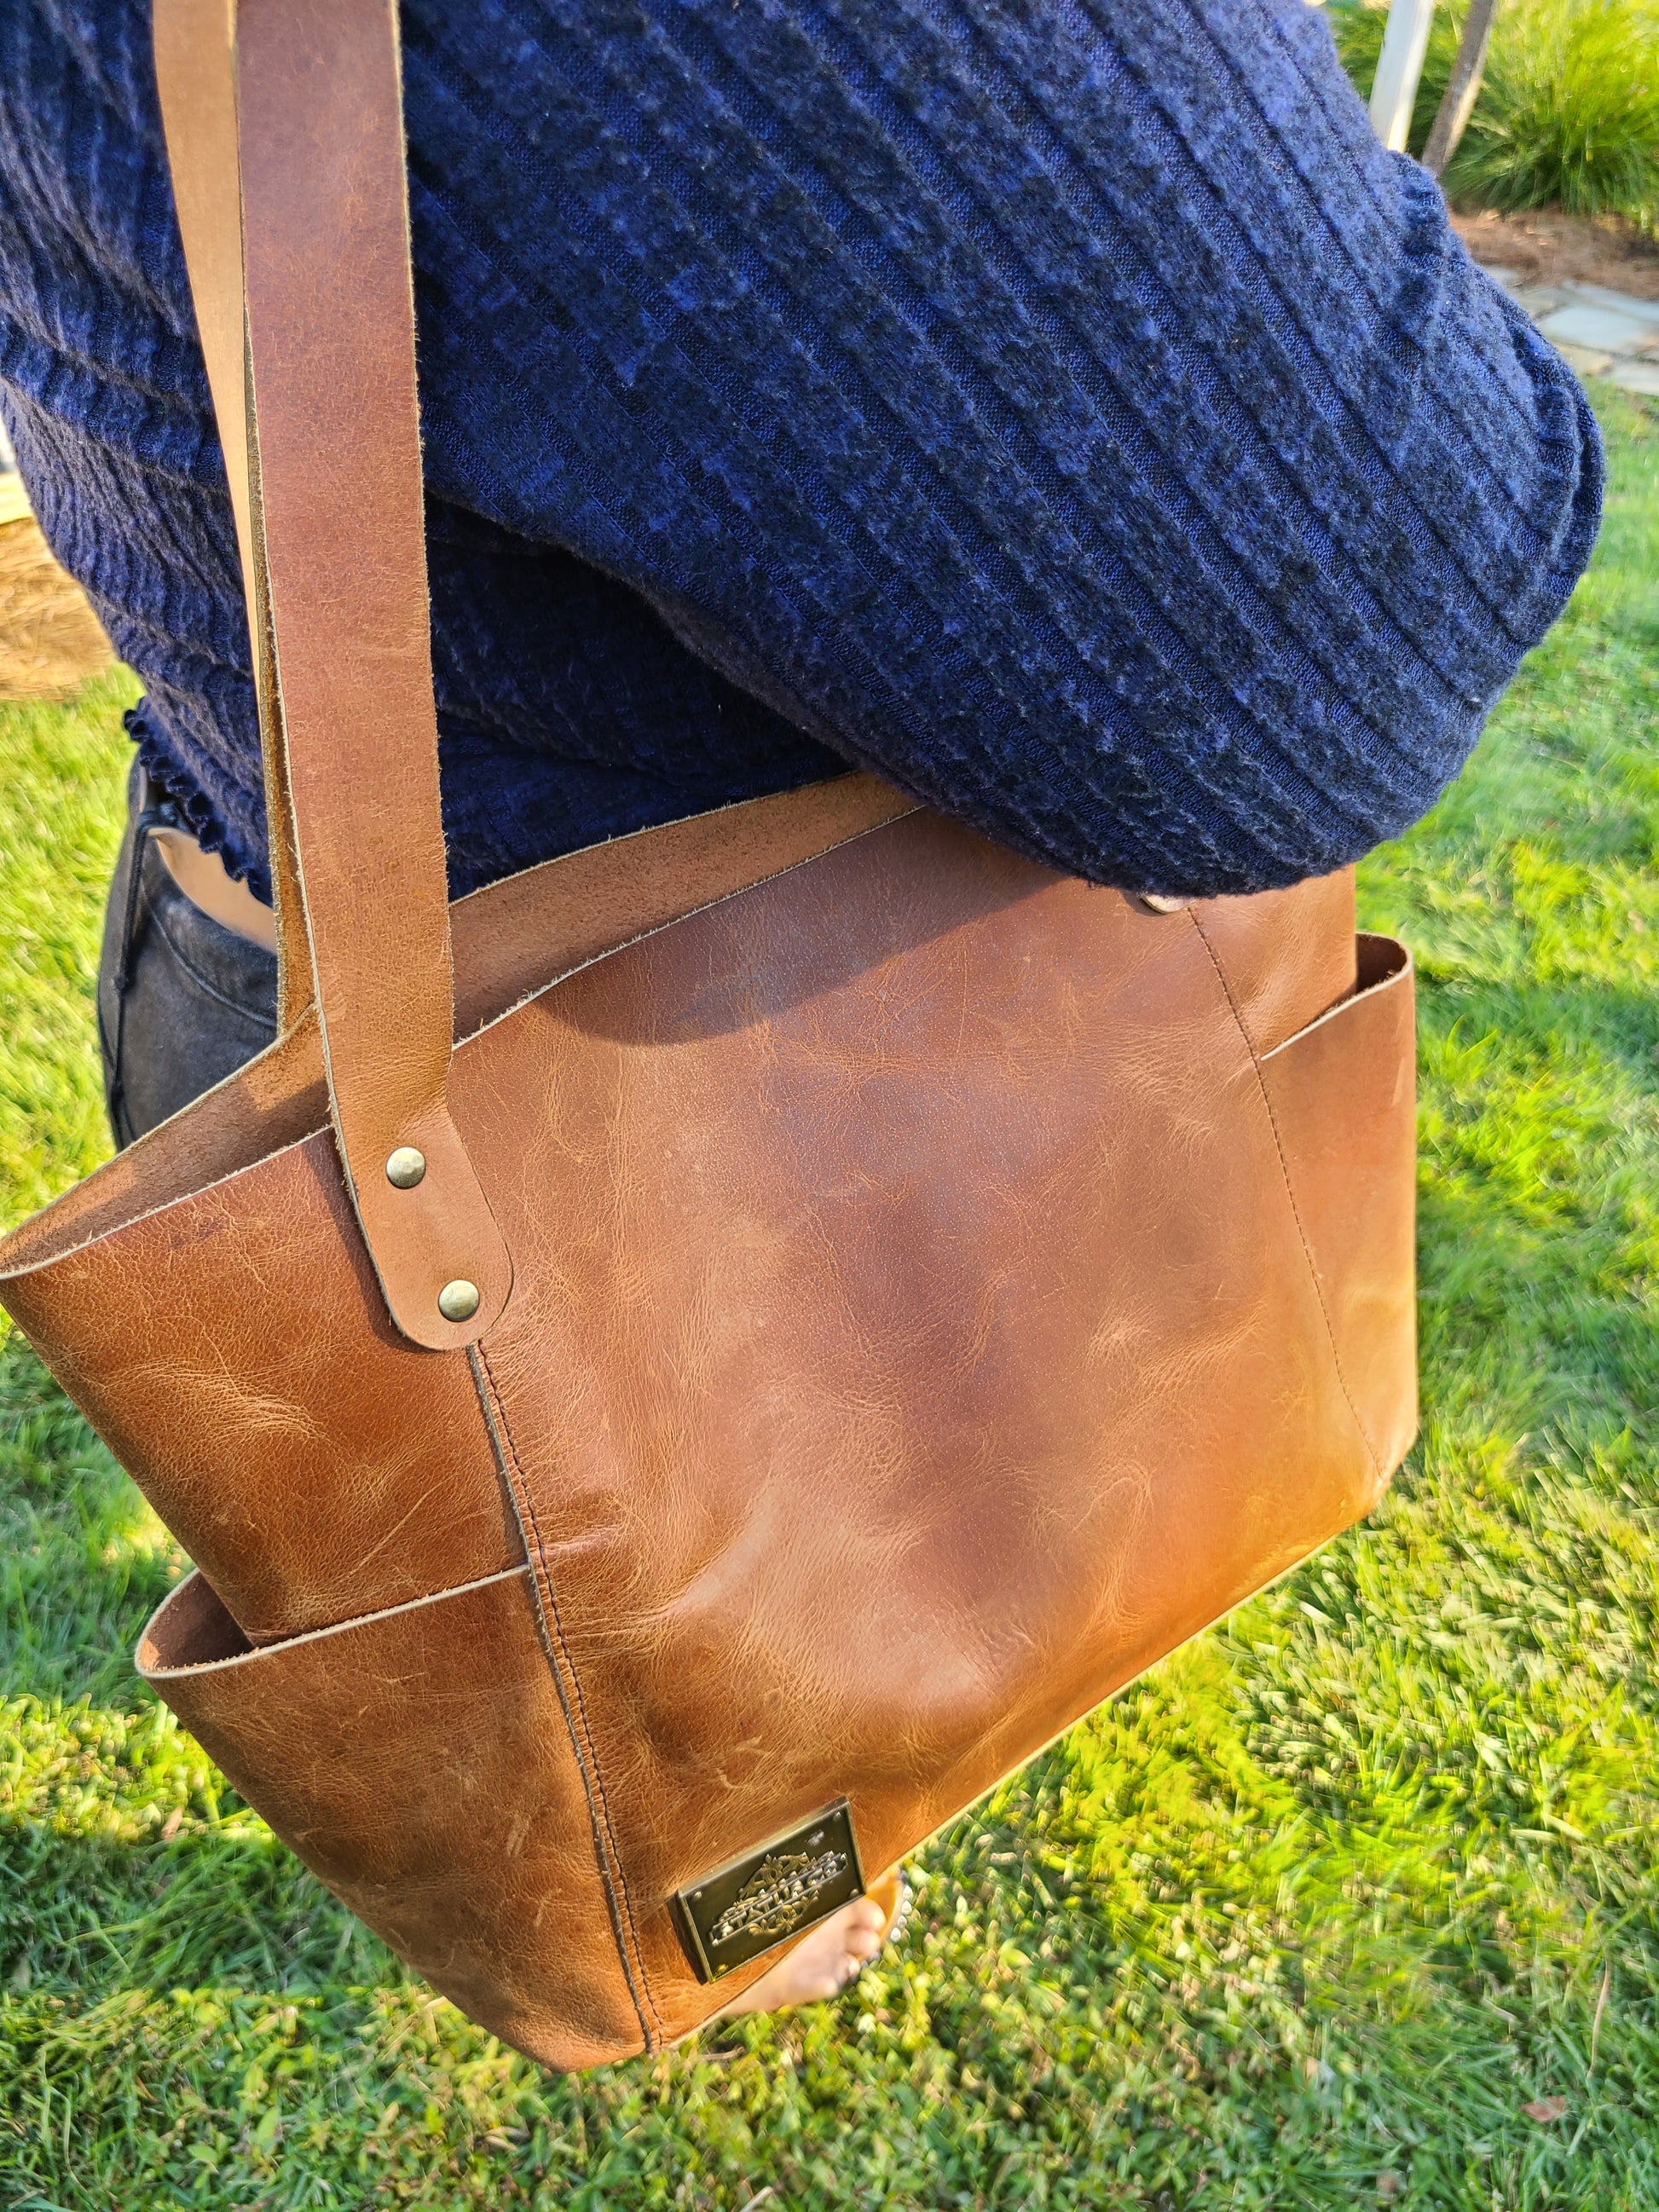 Tote&Carry - Large Designer Sling Bags, Black